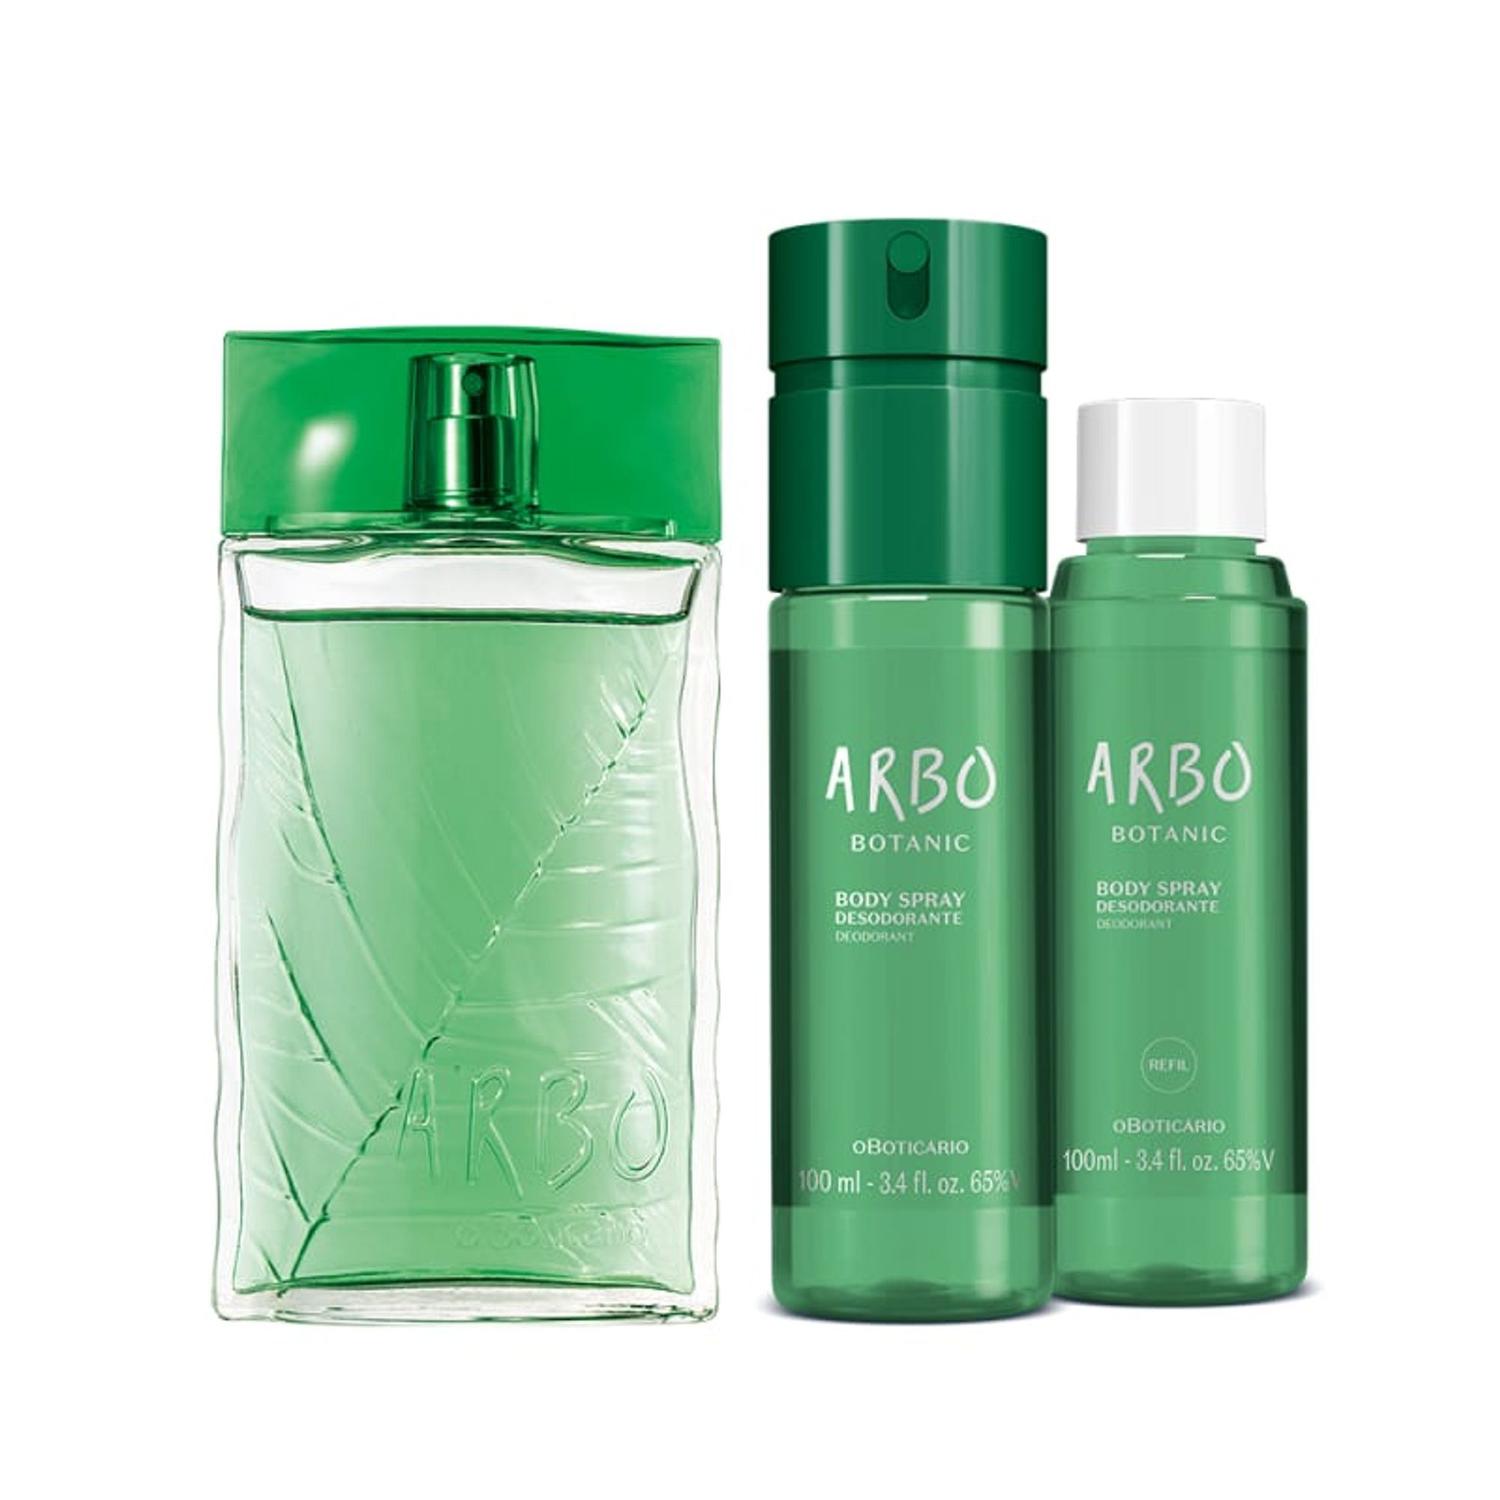 Combo Arbo Botanic: Desodorante Colônia 100ml + Body Spray 100ml + Refil Body Spray 100ml na oBoticário